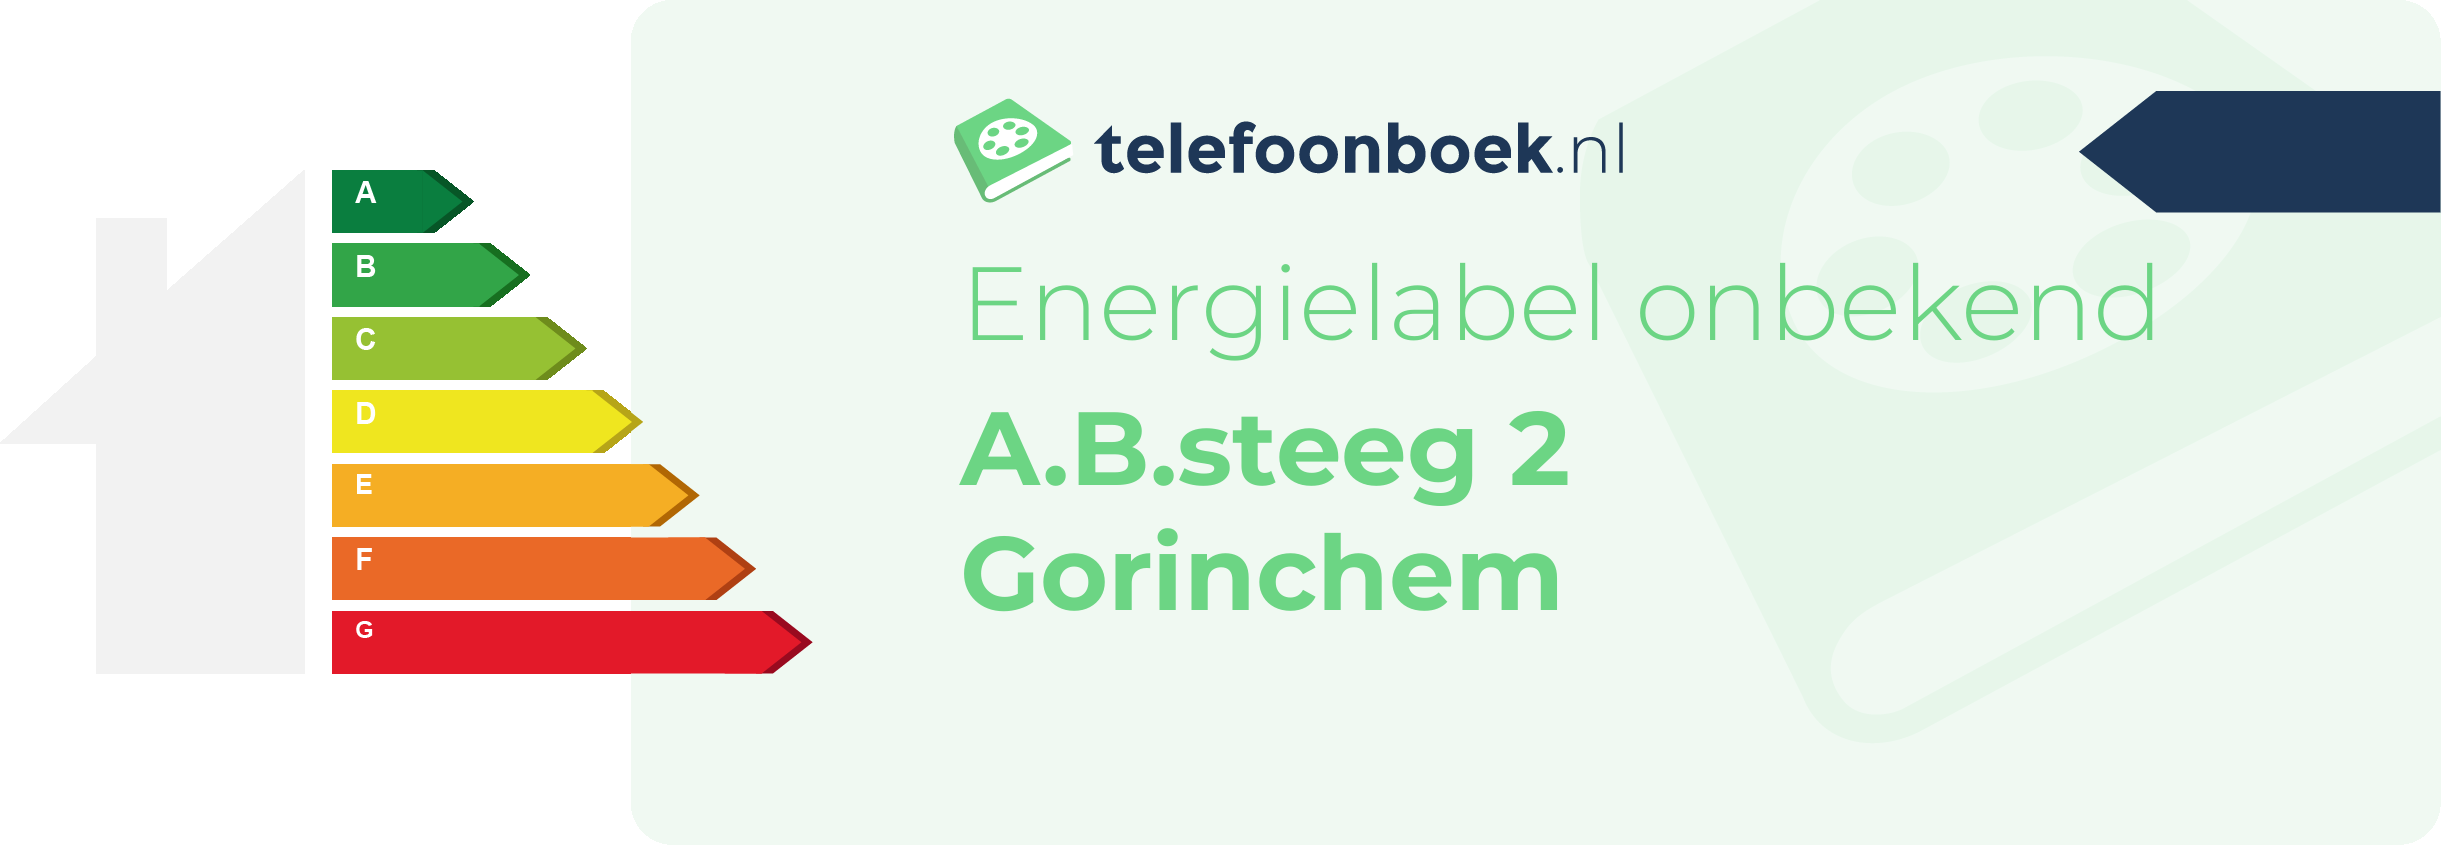 Energielabel A.B.steeg 2 Gorinchem